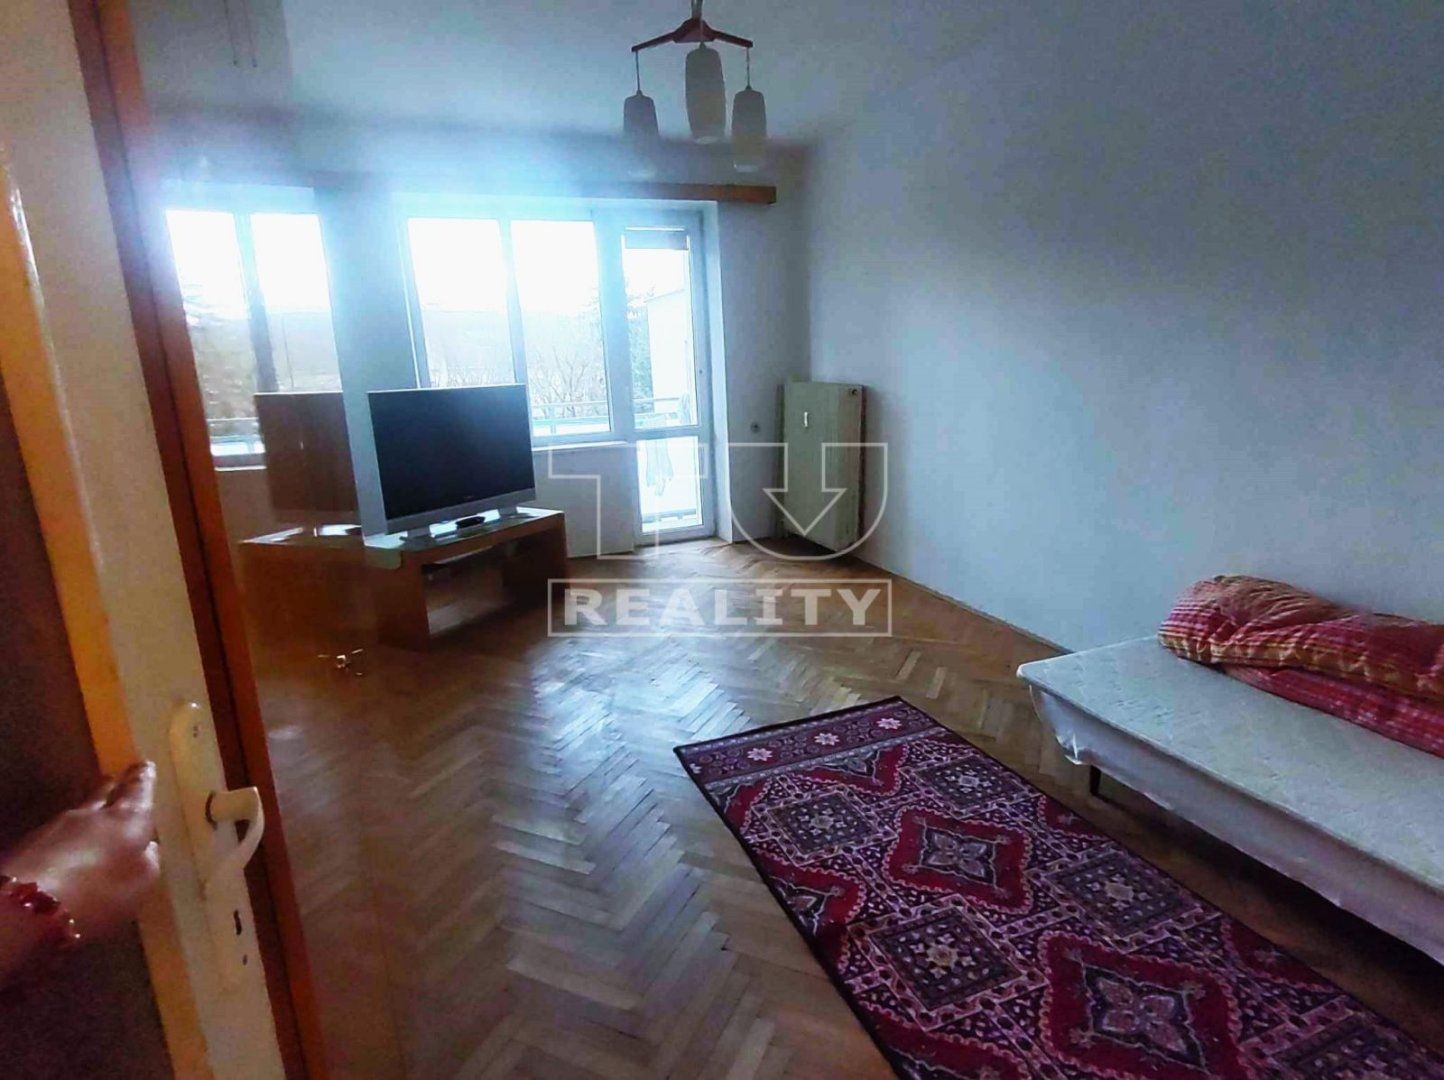 Na predaj 2,5 izbový byt v centre mesta Prešov.